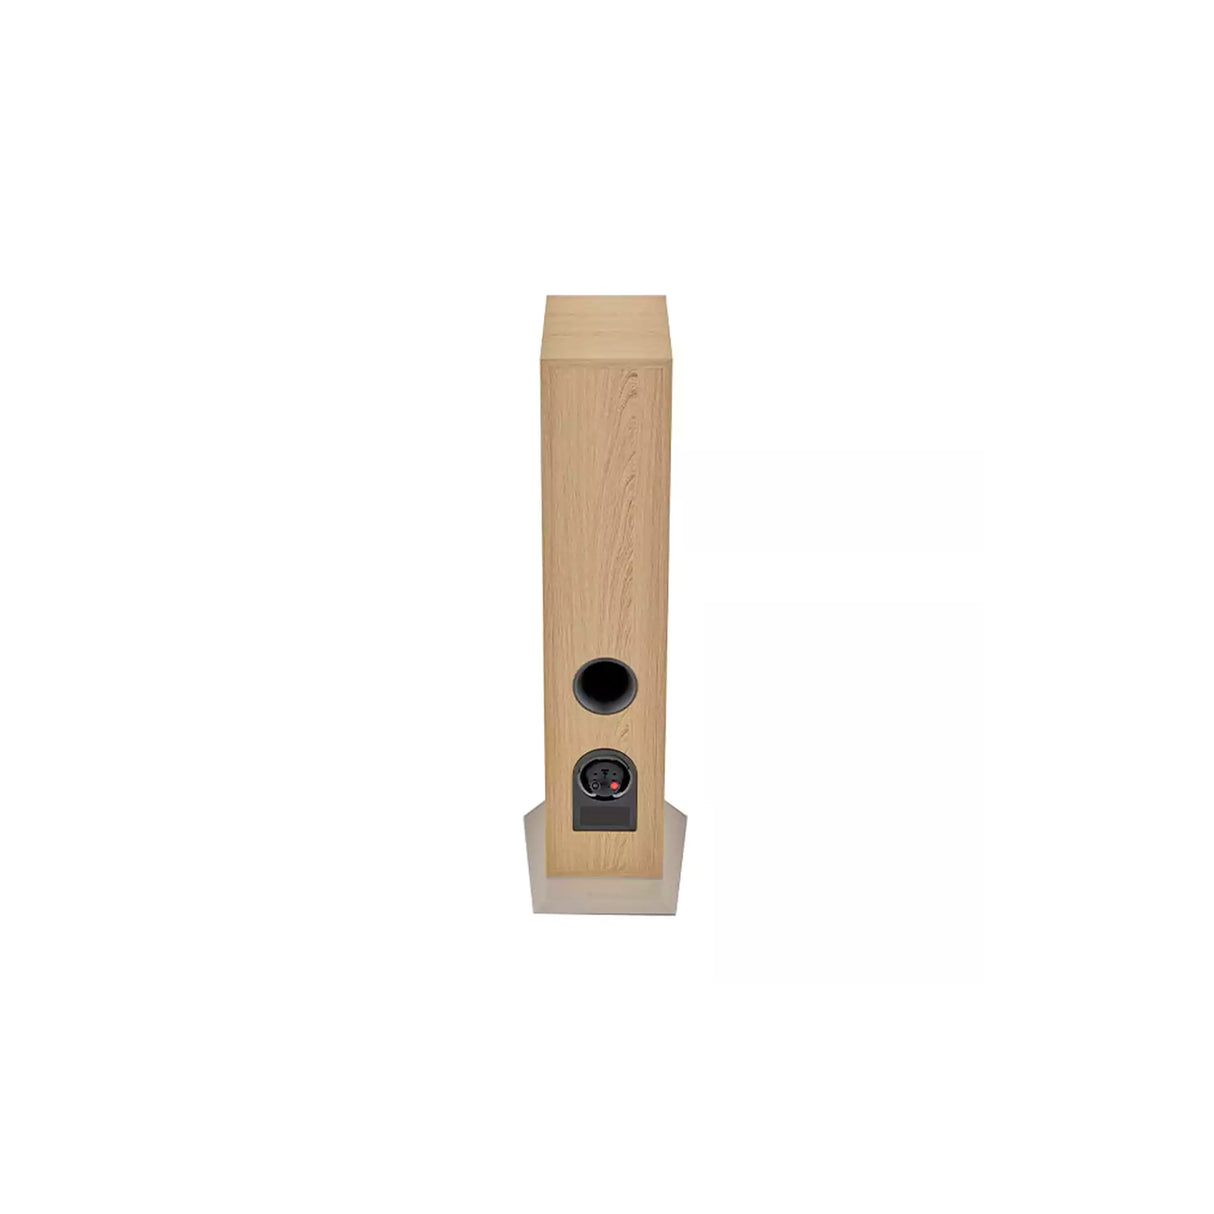 Focal Theva N°2 - 3-way floor-standing Speaker (Pair) (Light Wood)